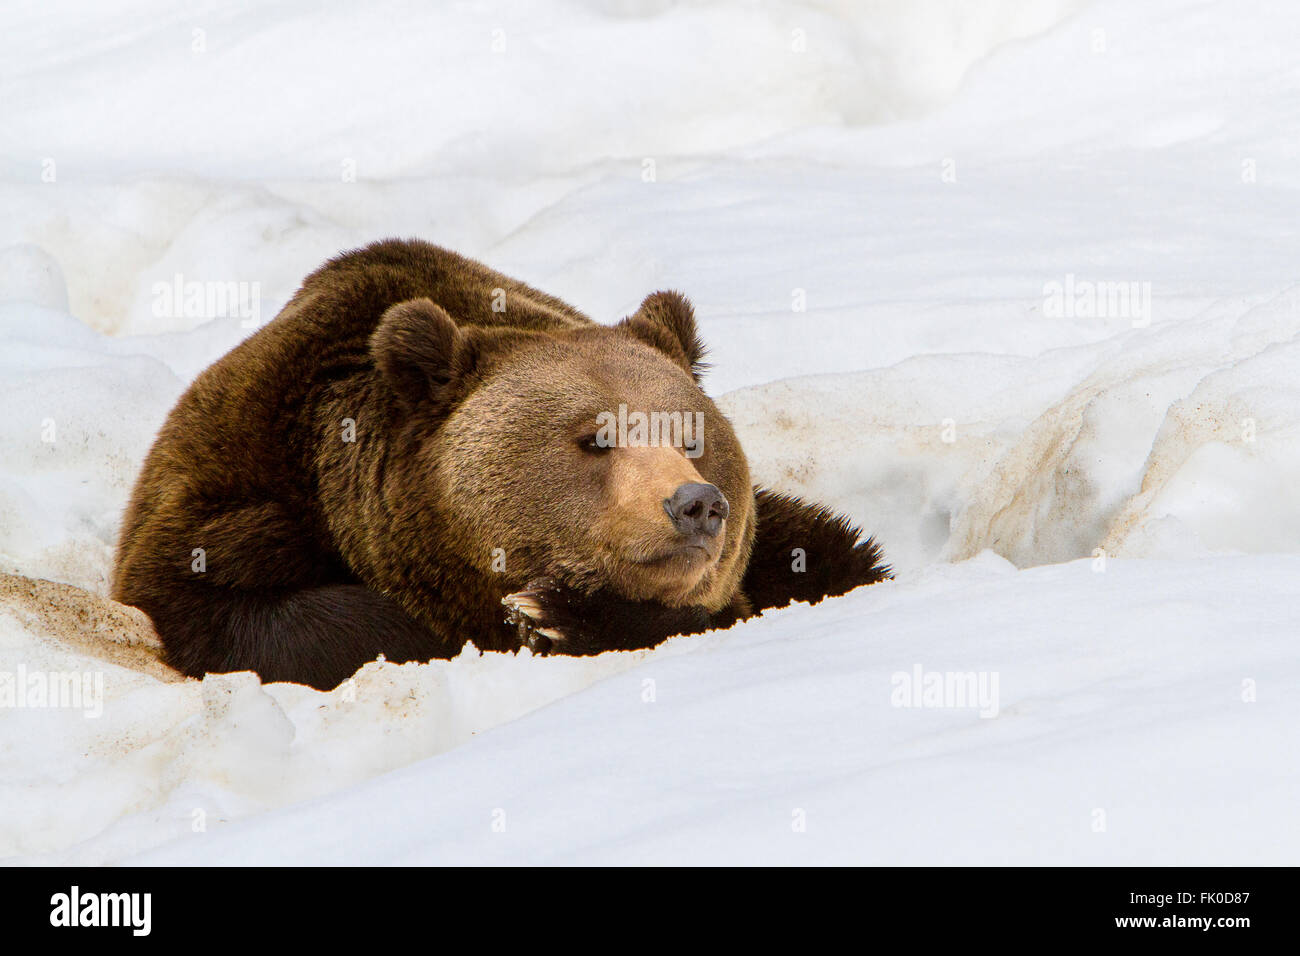 Euroasiática de oso pardo (Ursus arctos arctos) descansando en la nieve en invierno Foto de stock